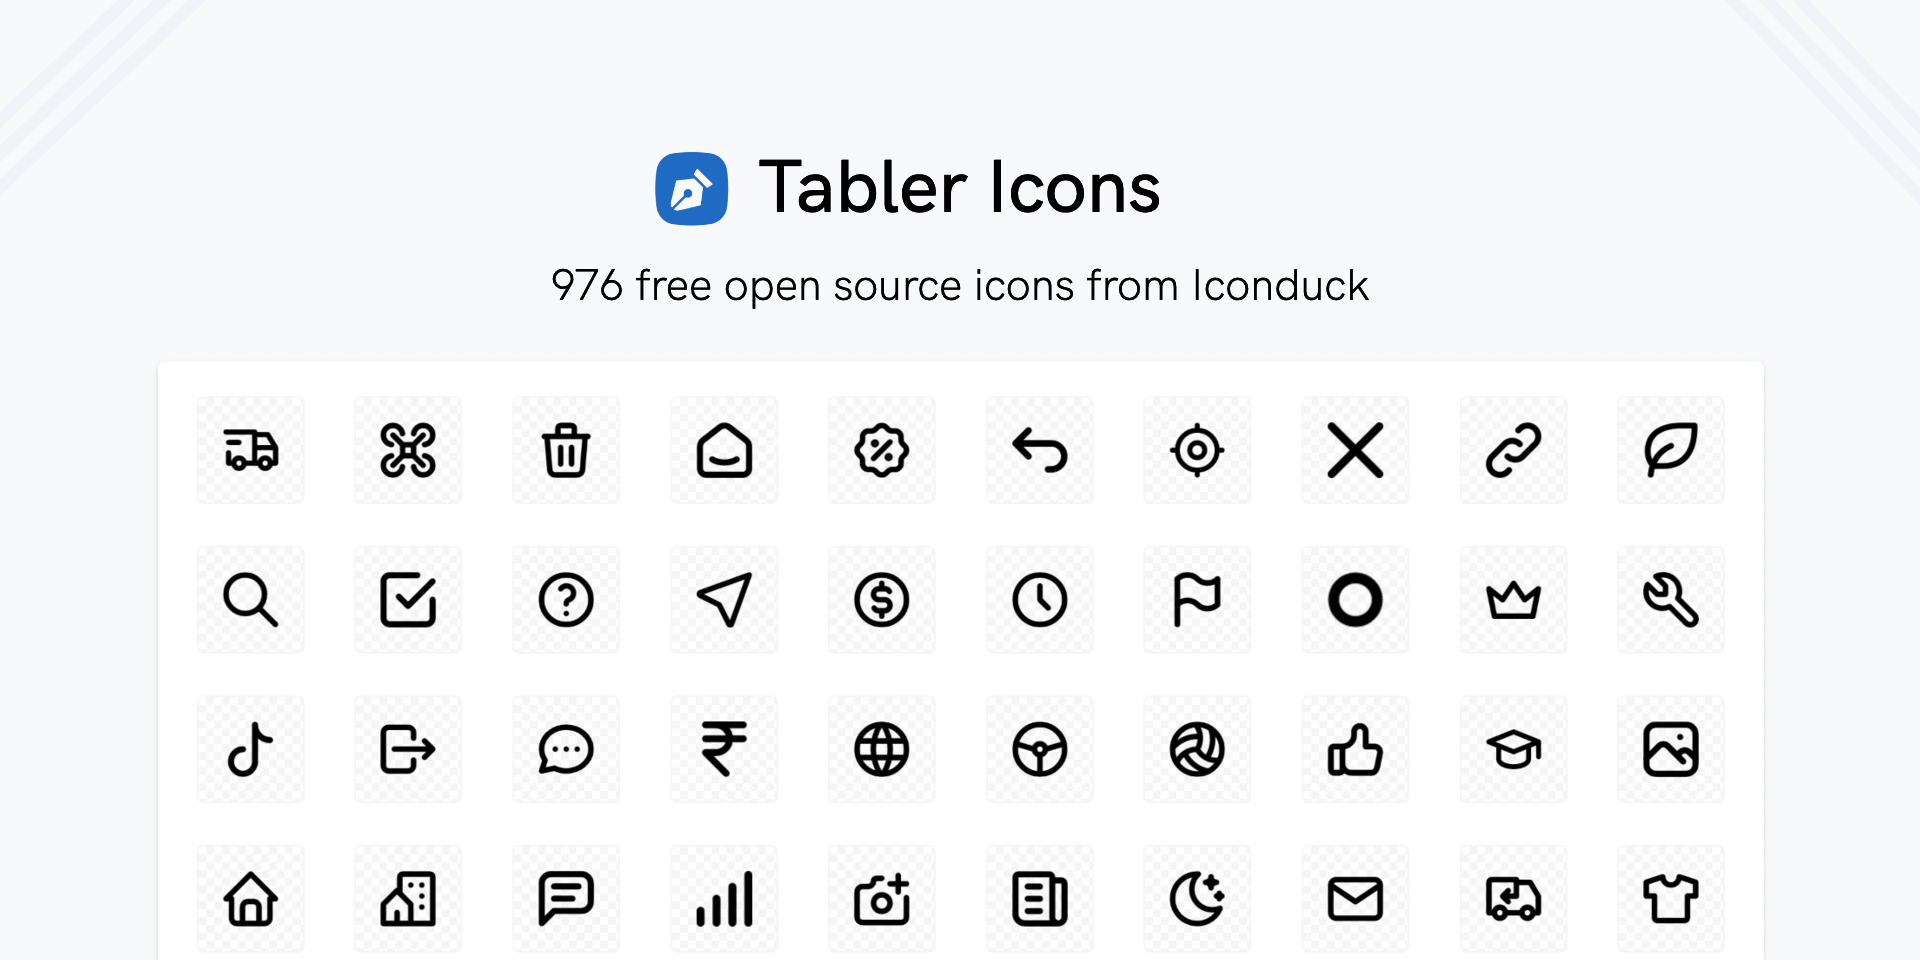 установить плагин для Фигмы Tabler Icons by Iconduck